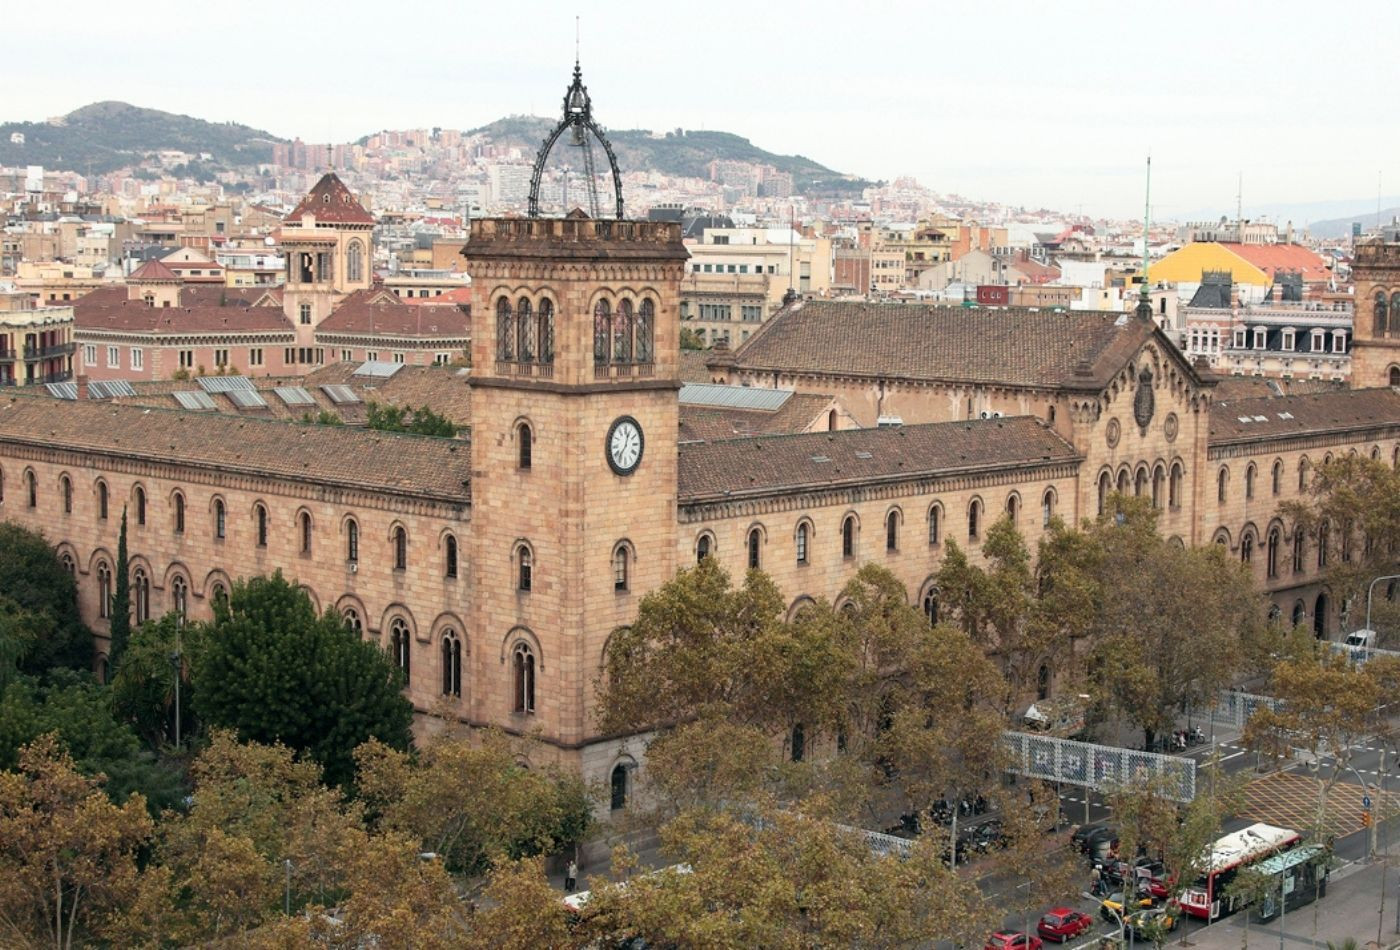 Edificio Histórico de la Universitat de Barcelona / UNIVERSITAT DE BARCELONA